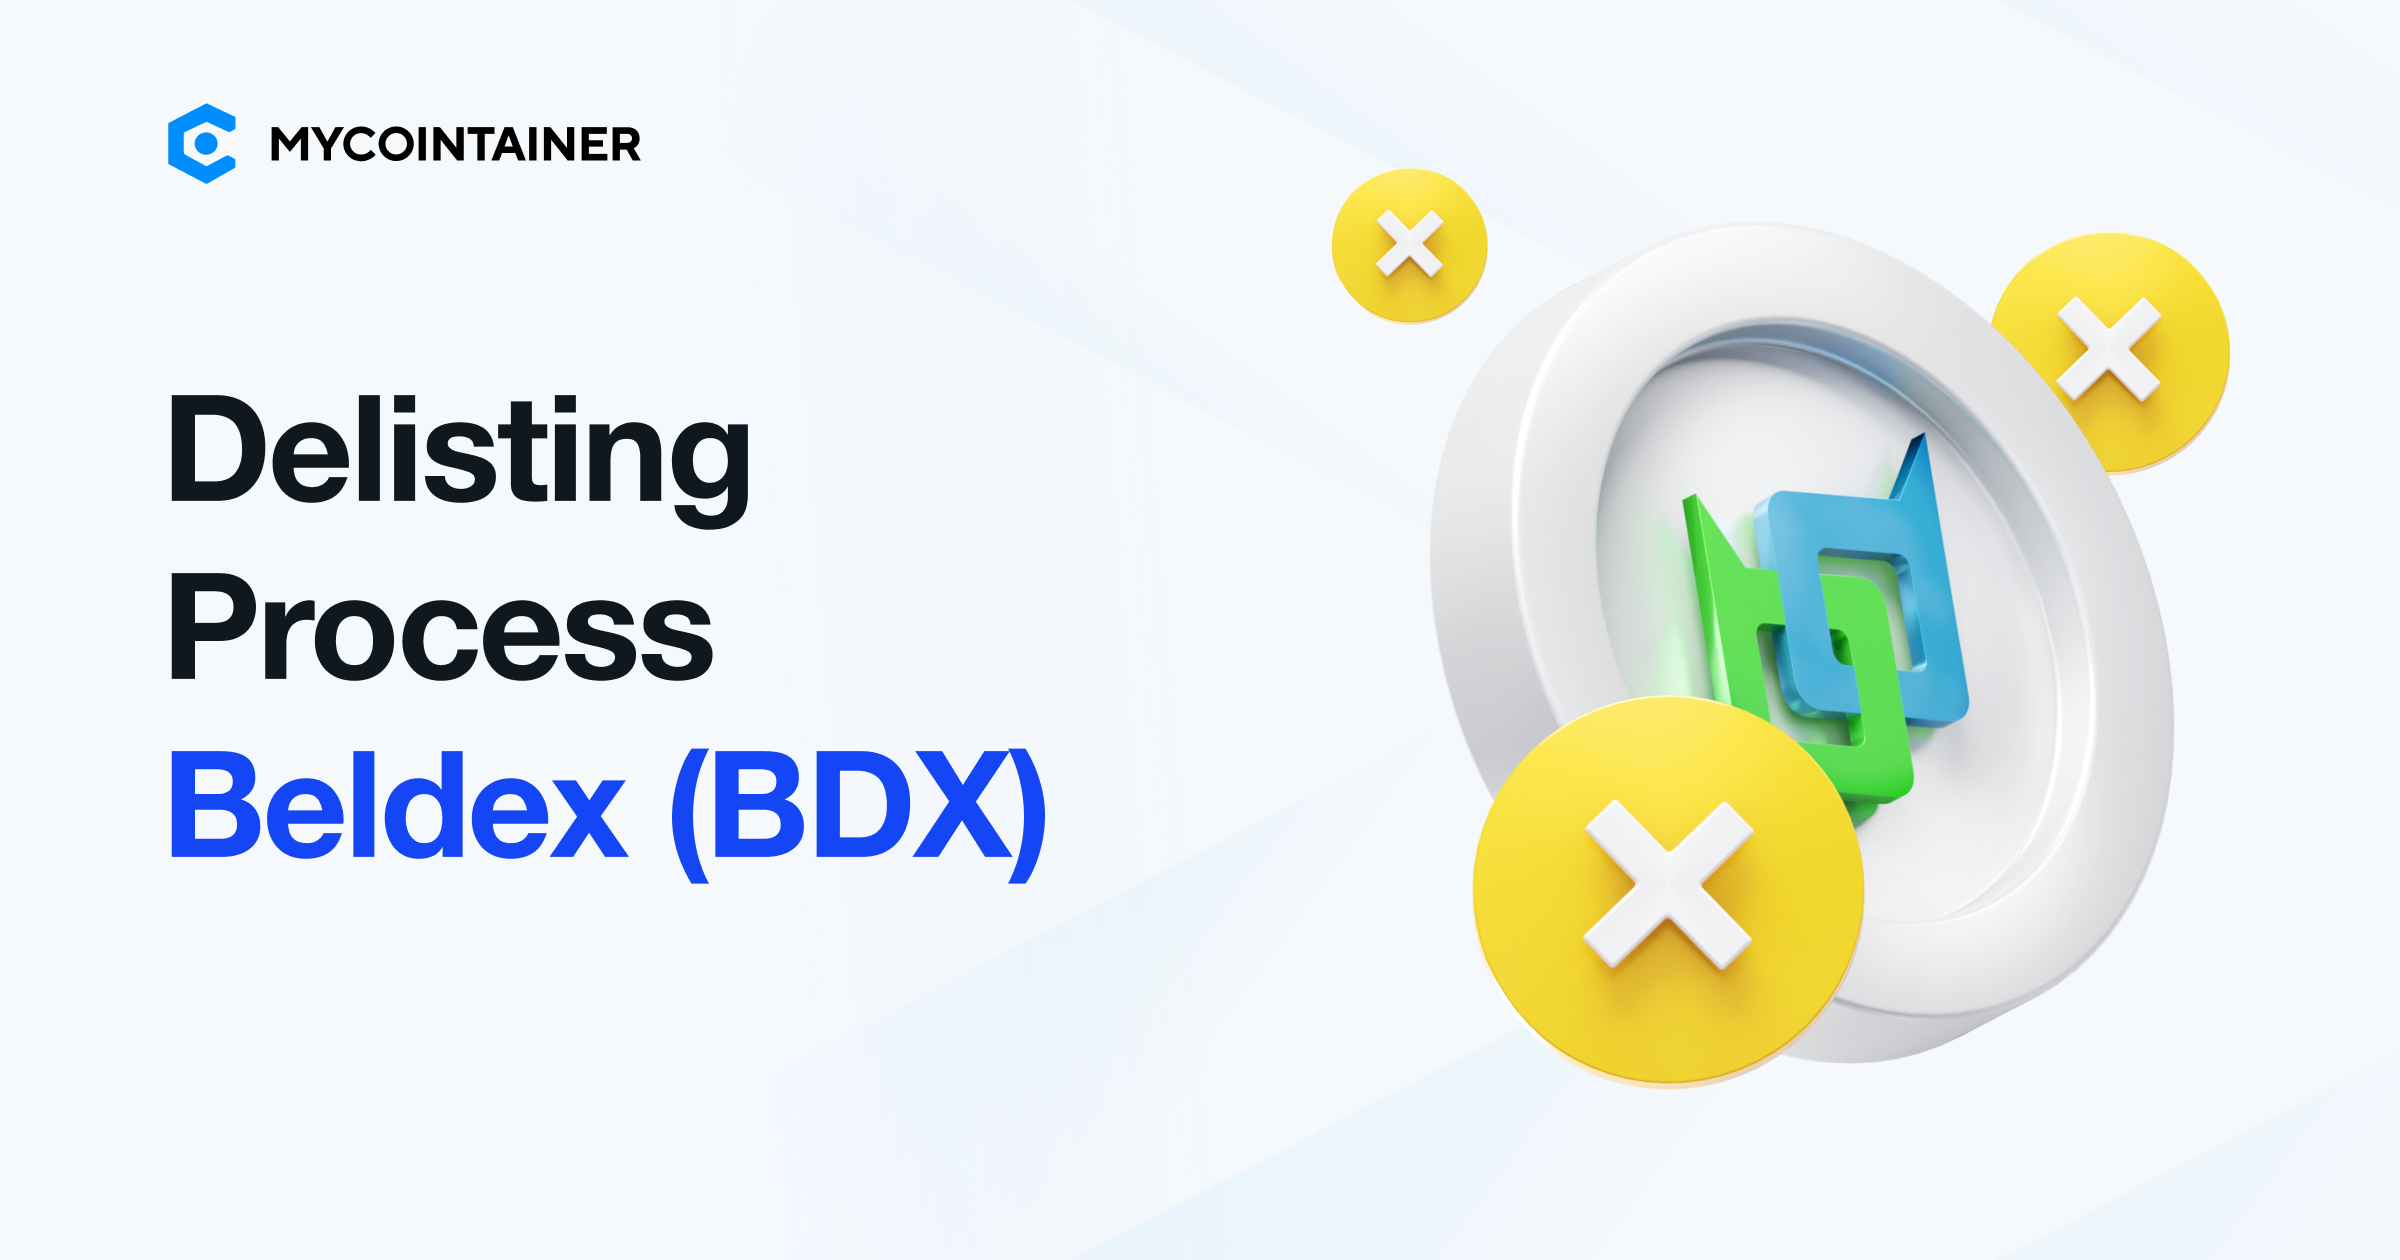 MyCointainer to Delist Beldex (BDX)